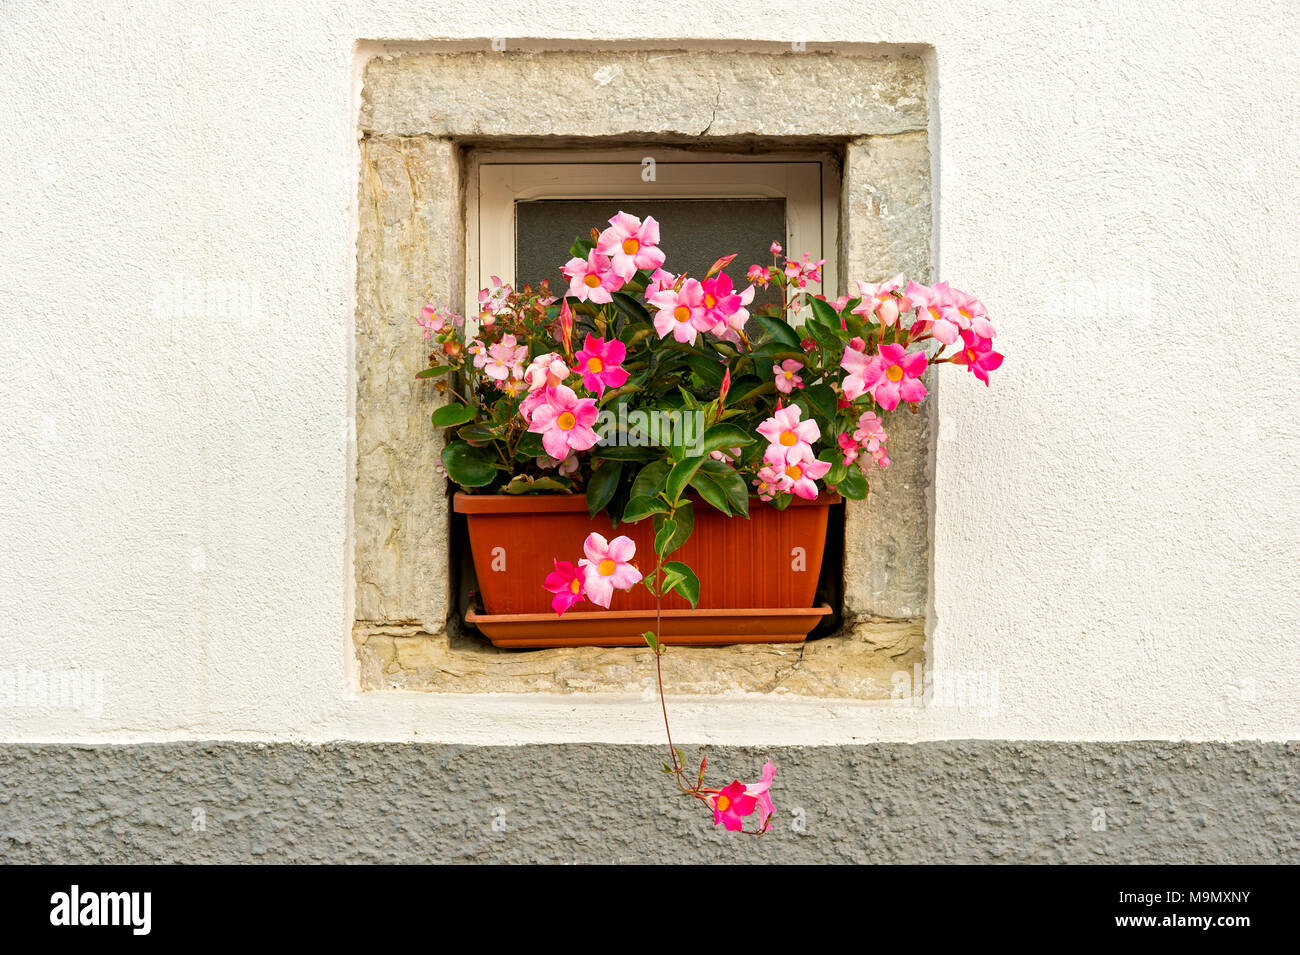 Boîte à fleurs rose à fleurs (Mandevilla Dipladenia sanderi), dans une fenêtre en alcôve, Vieille Ville, Agnone, Molise, Italie Banque D'Images